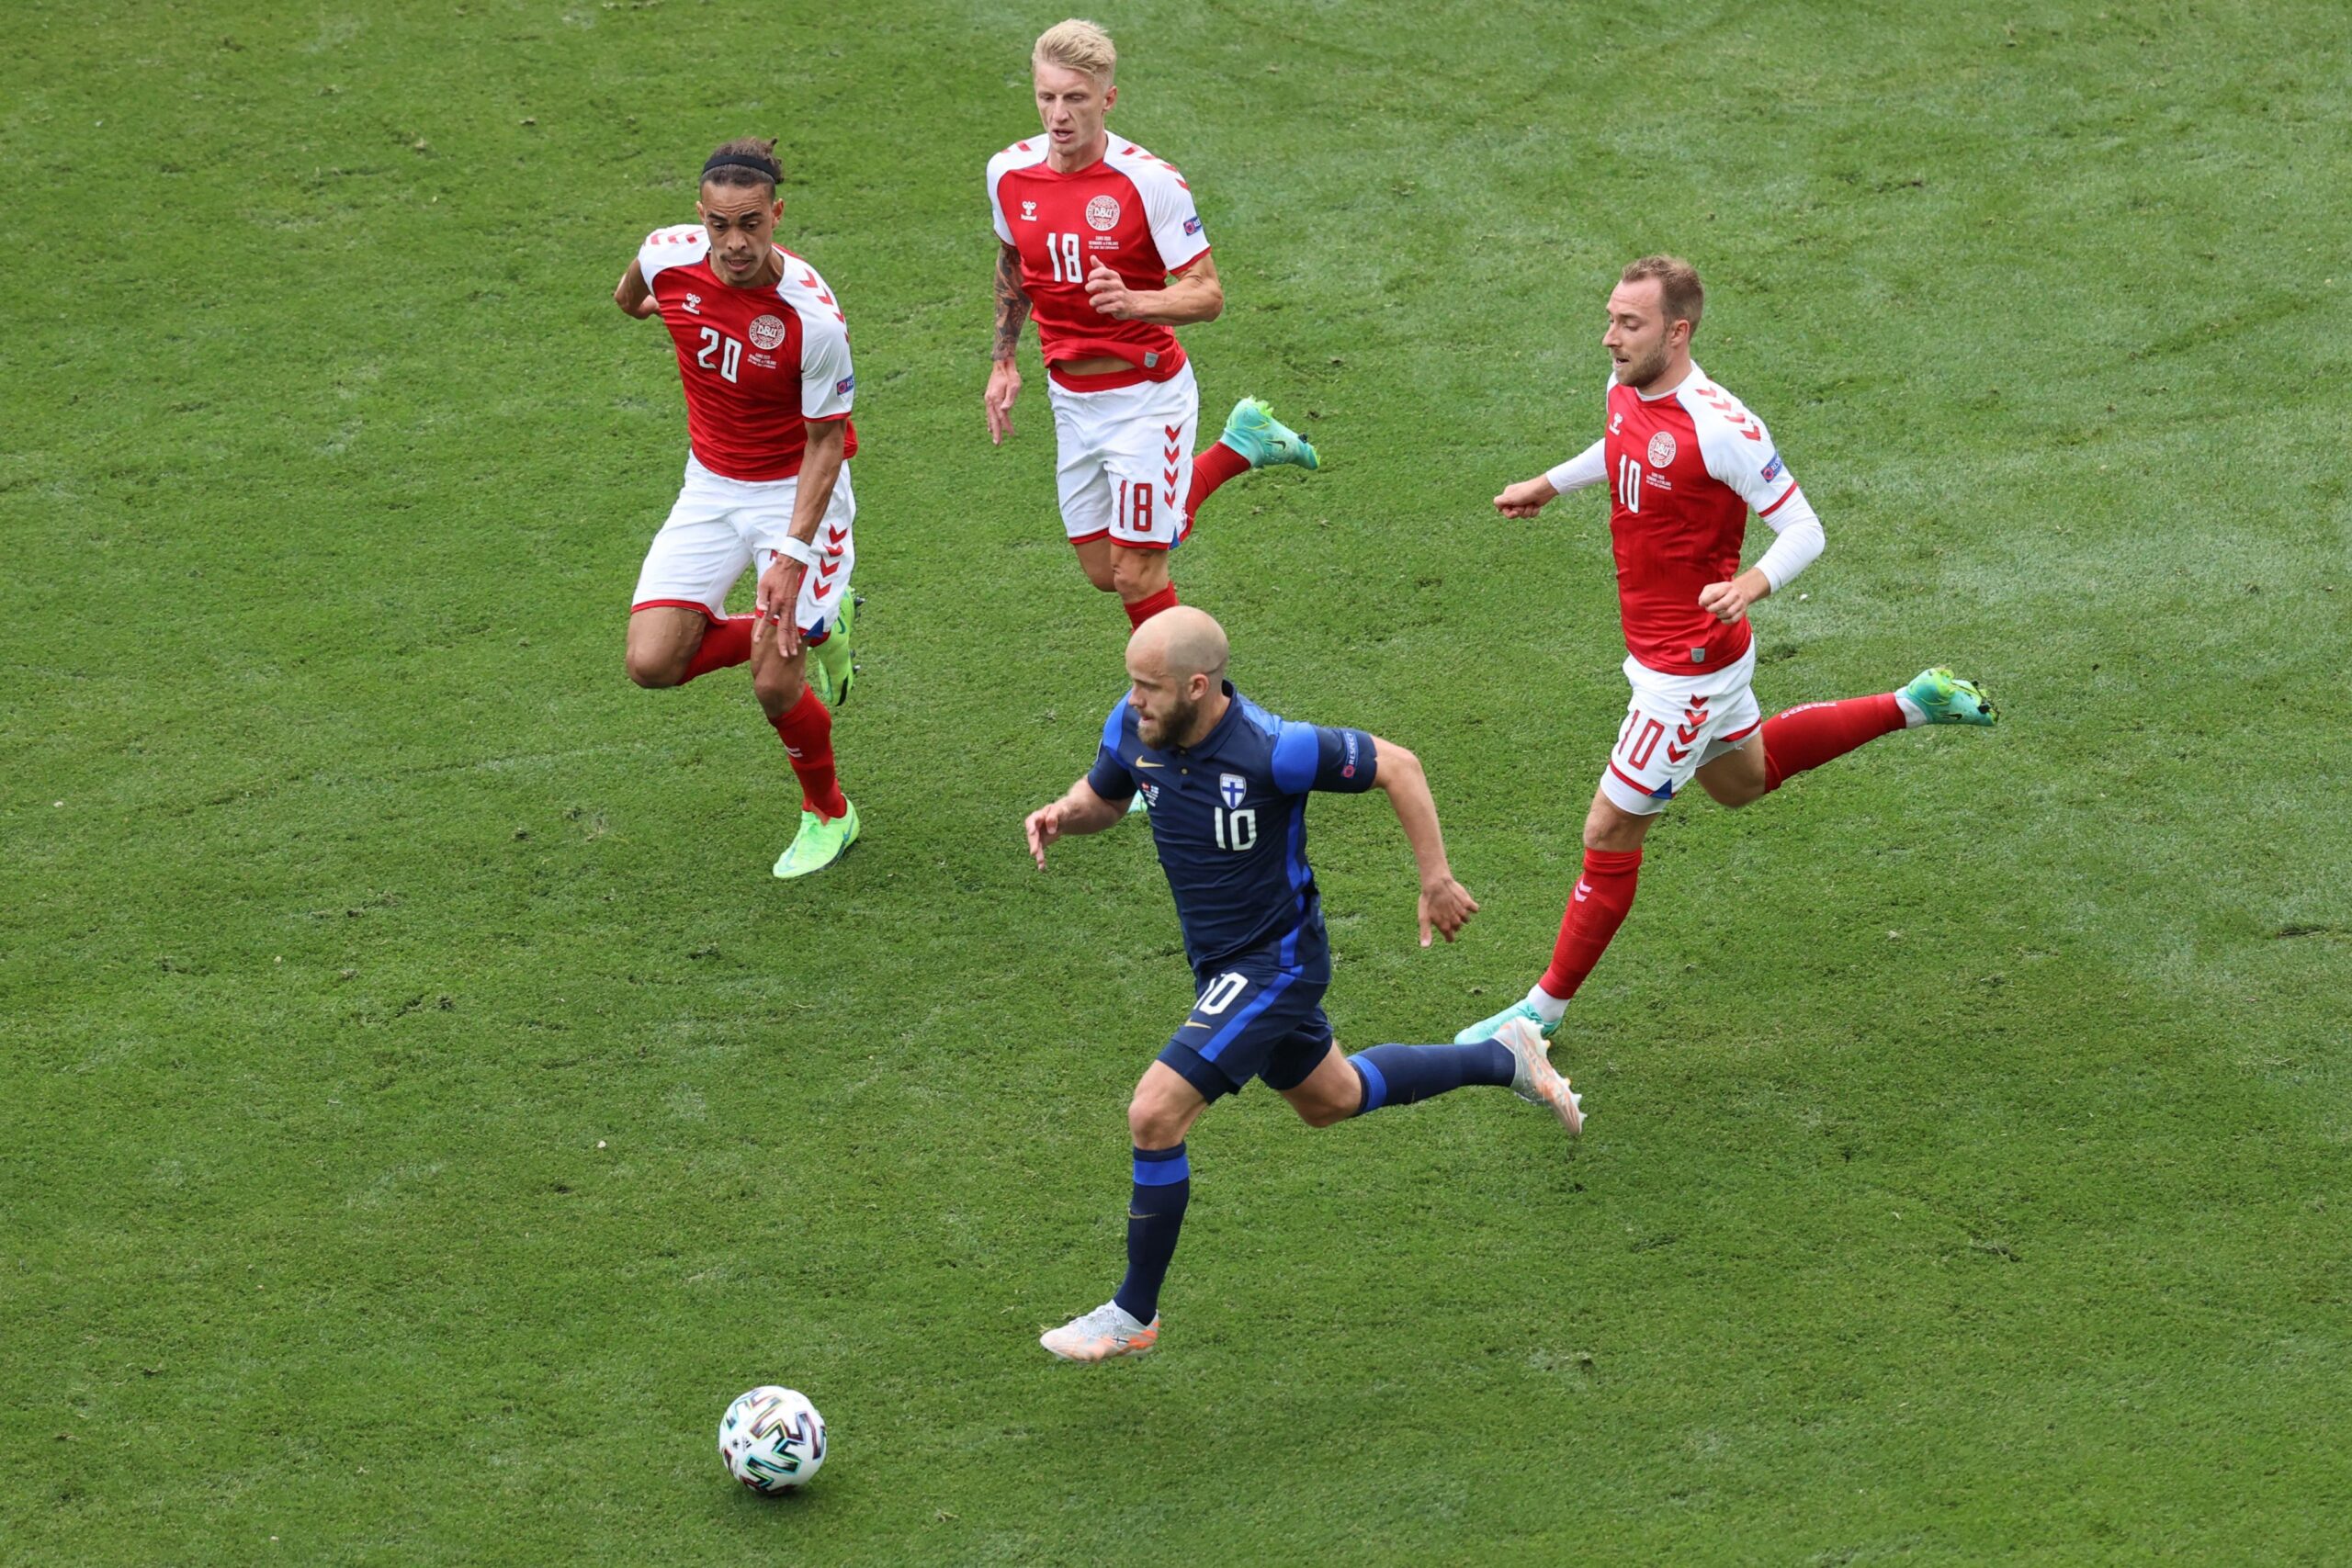 Σοκ στο Euro: Κατέρρευσε παίκτης της Εθνικής Δανίας στο ματς με τη Φινλανδία – Οι εικόνες των συμπαικτών του να προσεύχονται